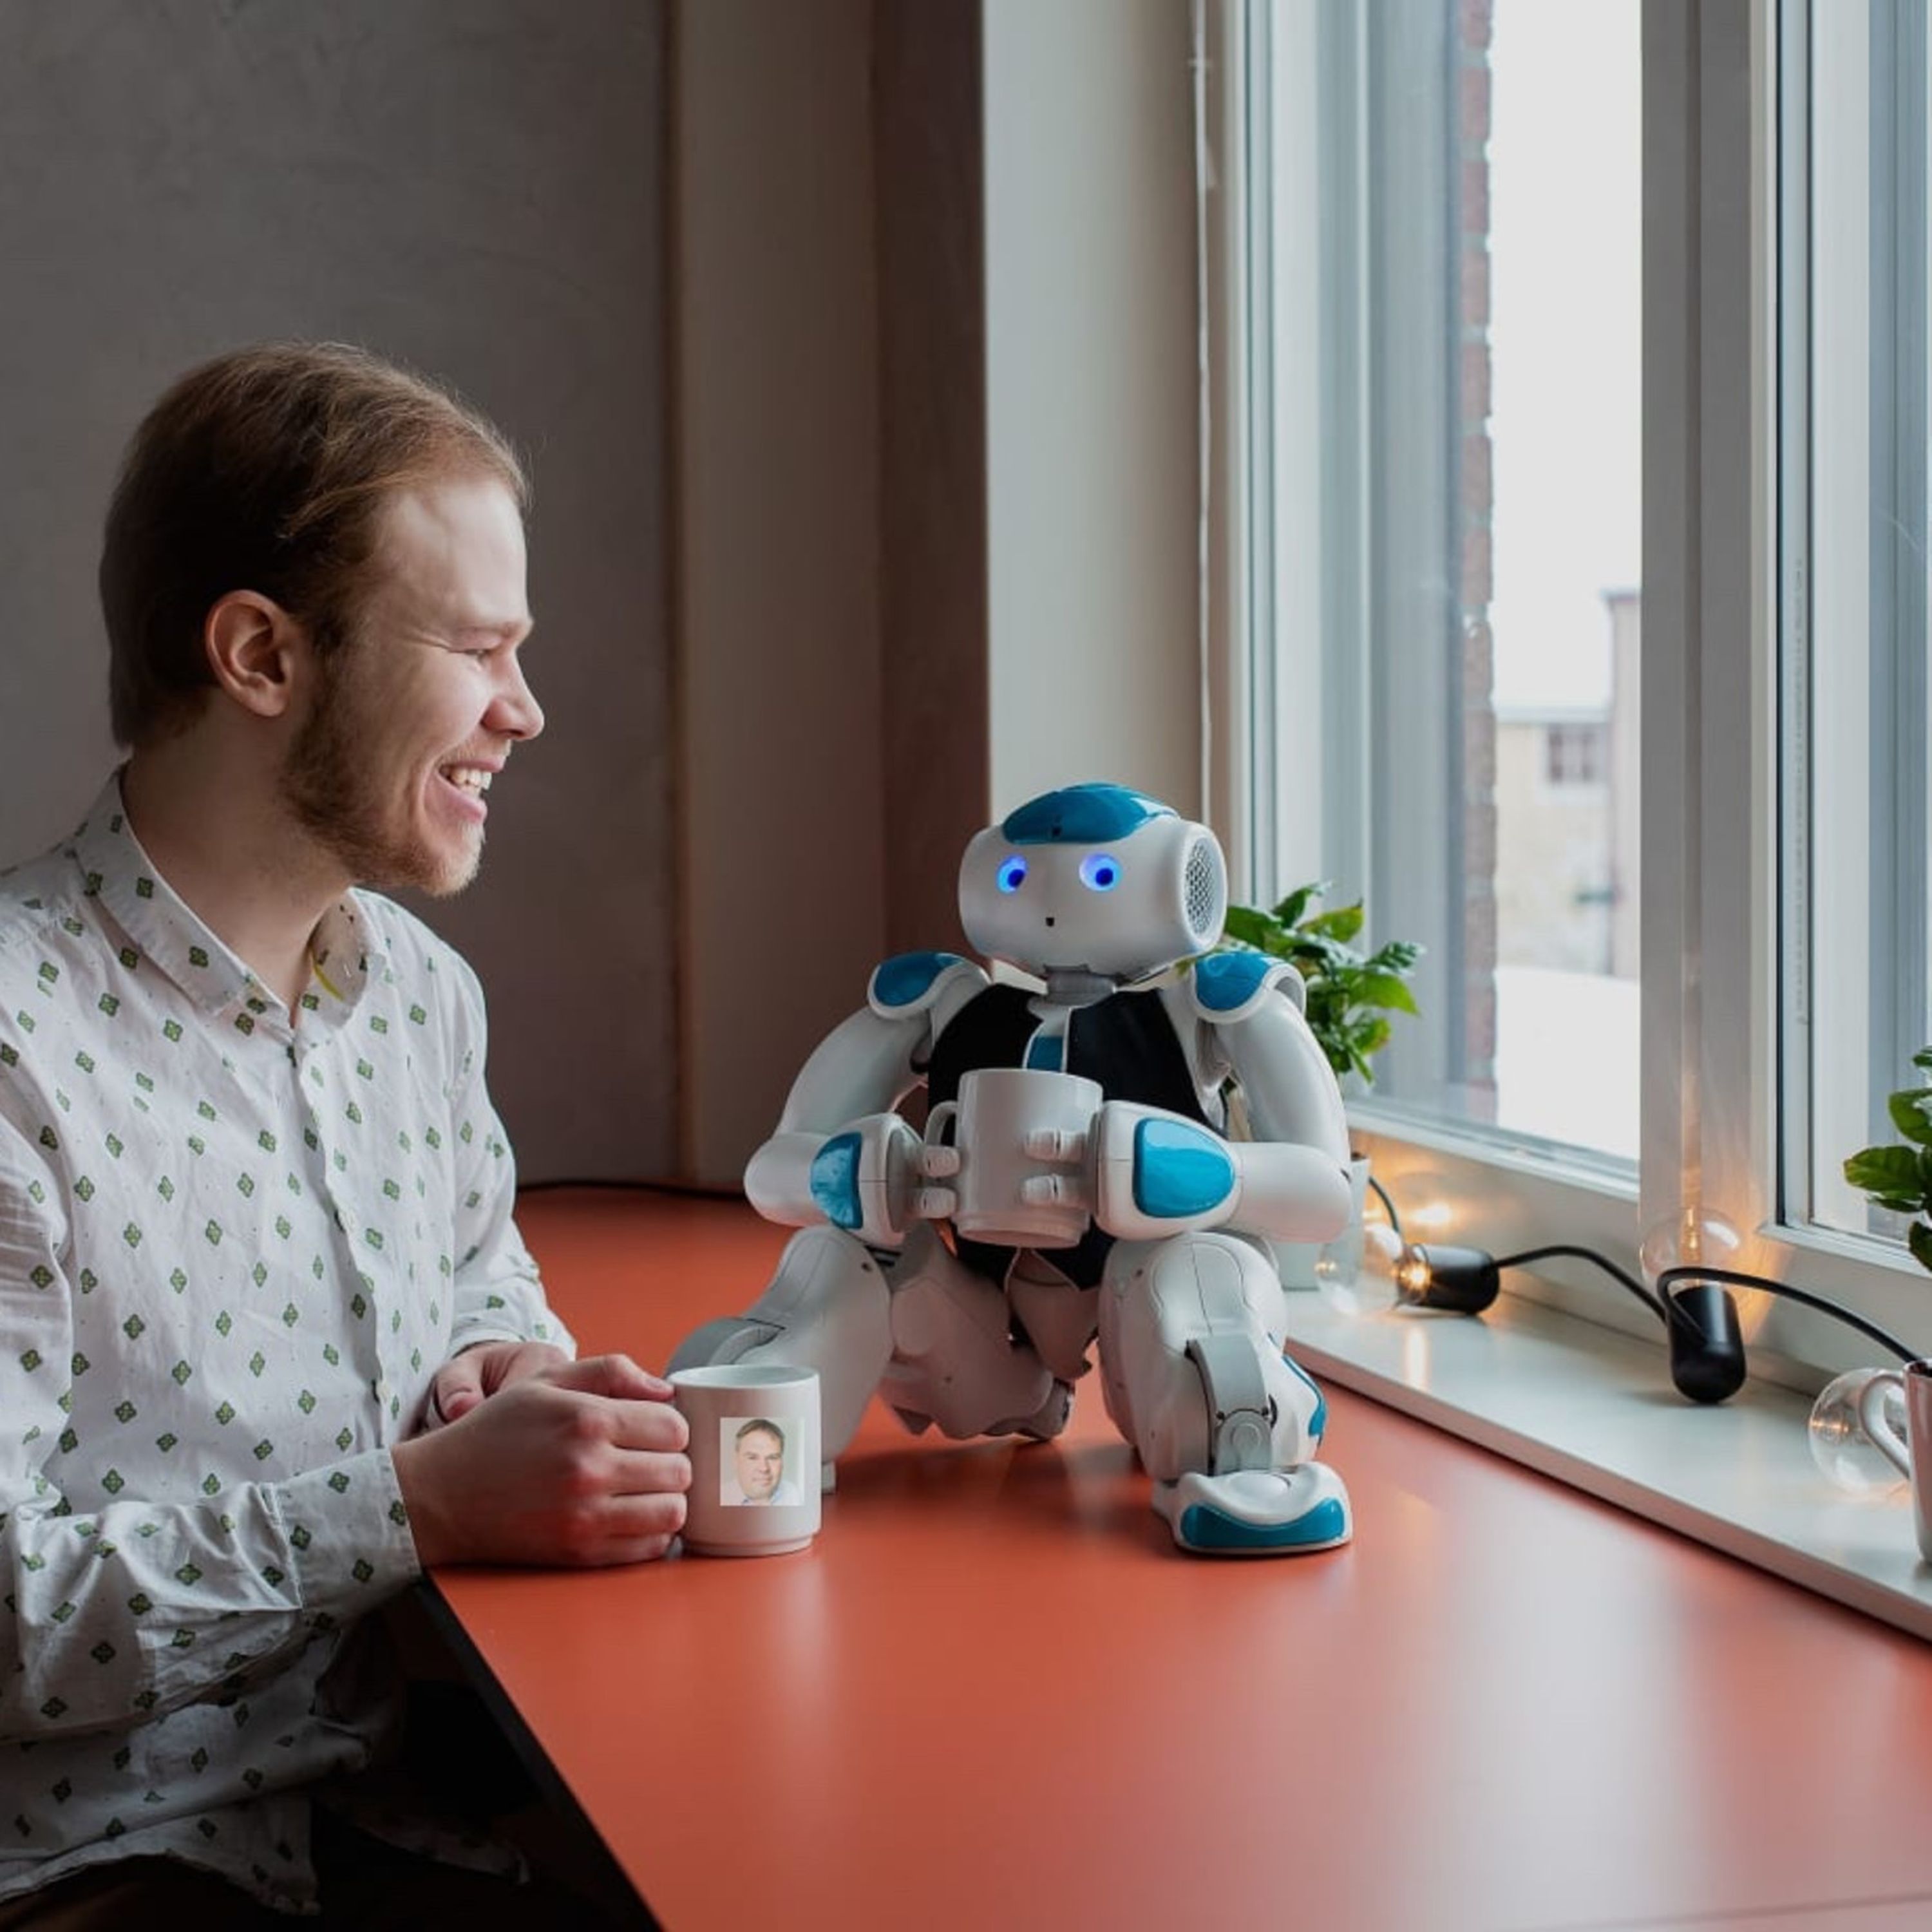 Teknikveckan special: Så kommer robotarna ge oss en meningsfull fritid - med Fredrik Svedberg & Fredrik Löfgren